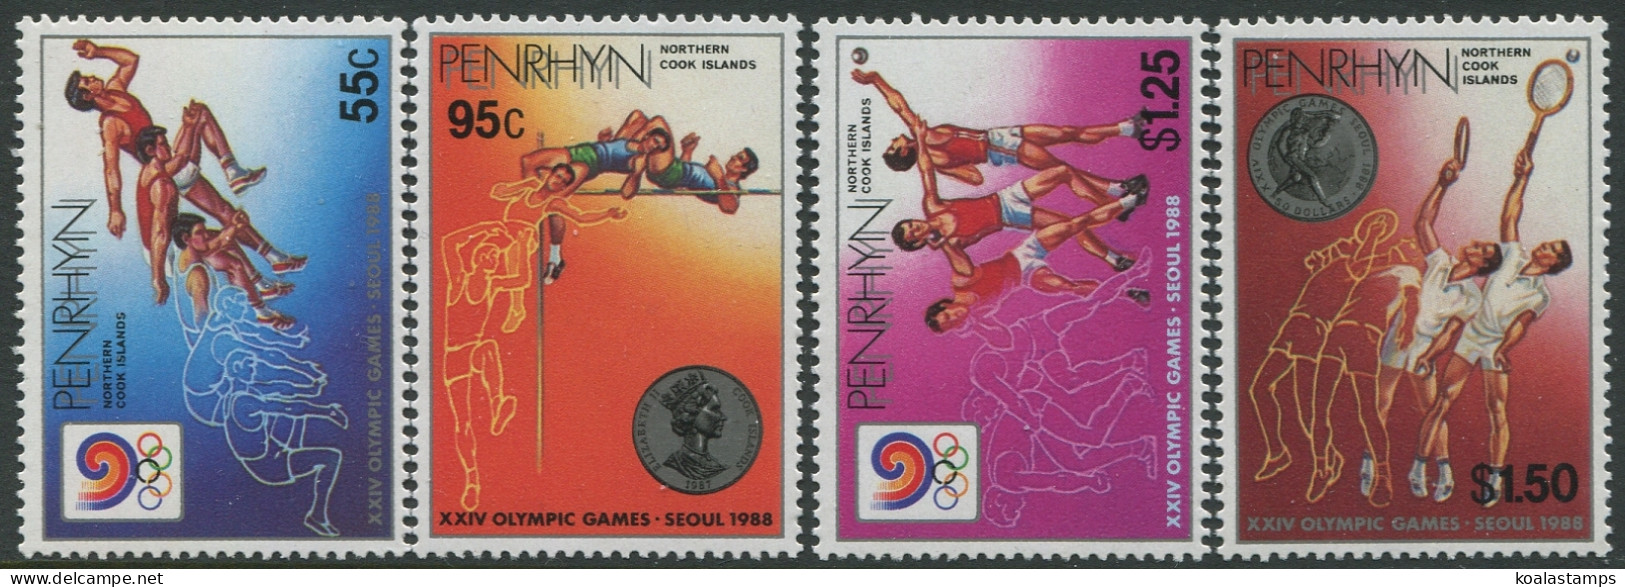 Cook Islands Penrhyn 1988 SG420-423 Olympic Games Seoul Set MNH - Penrhyn